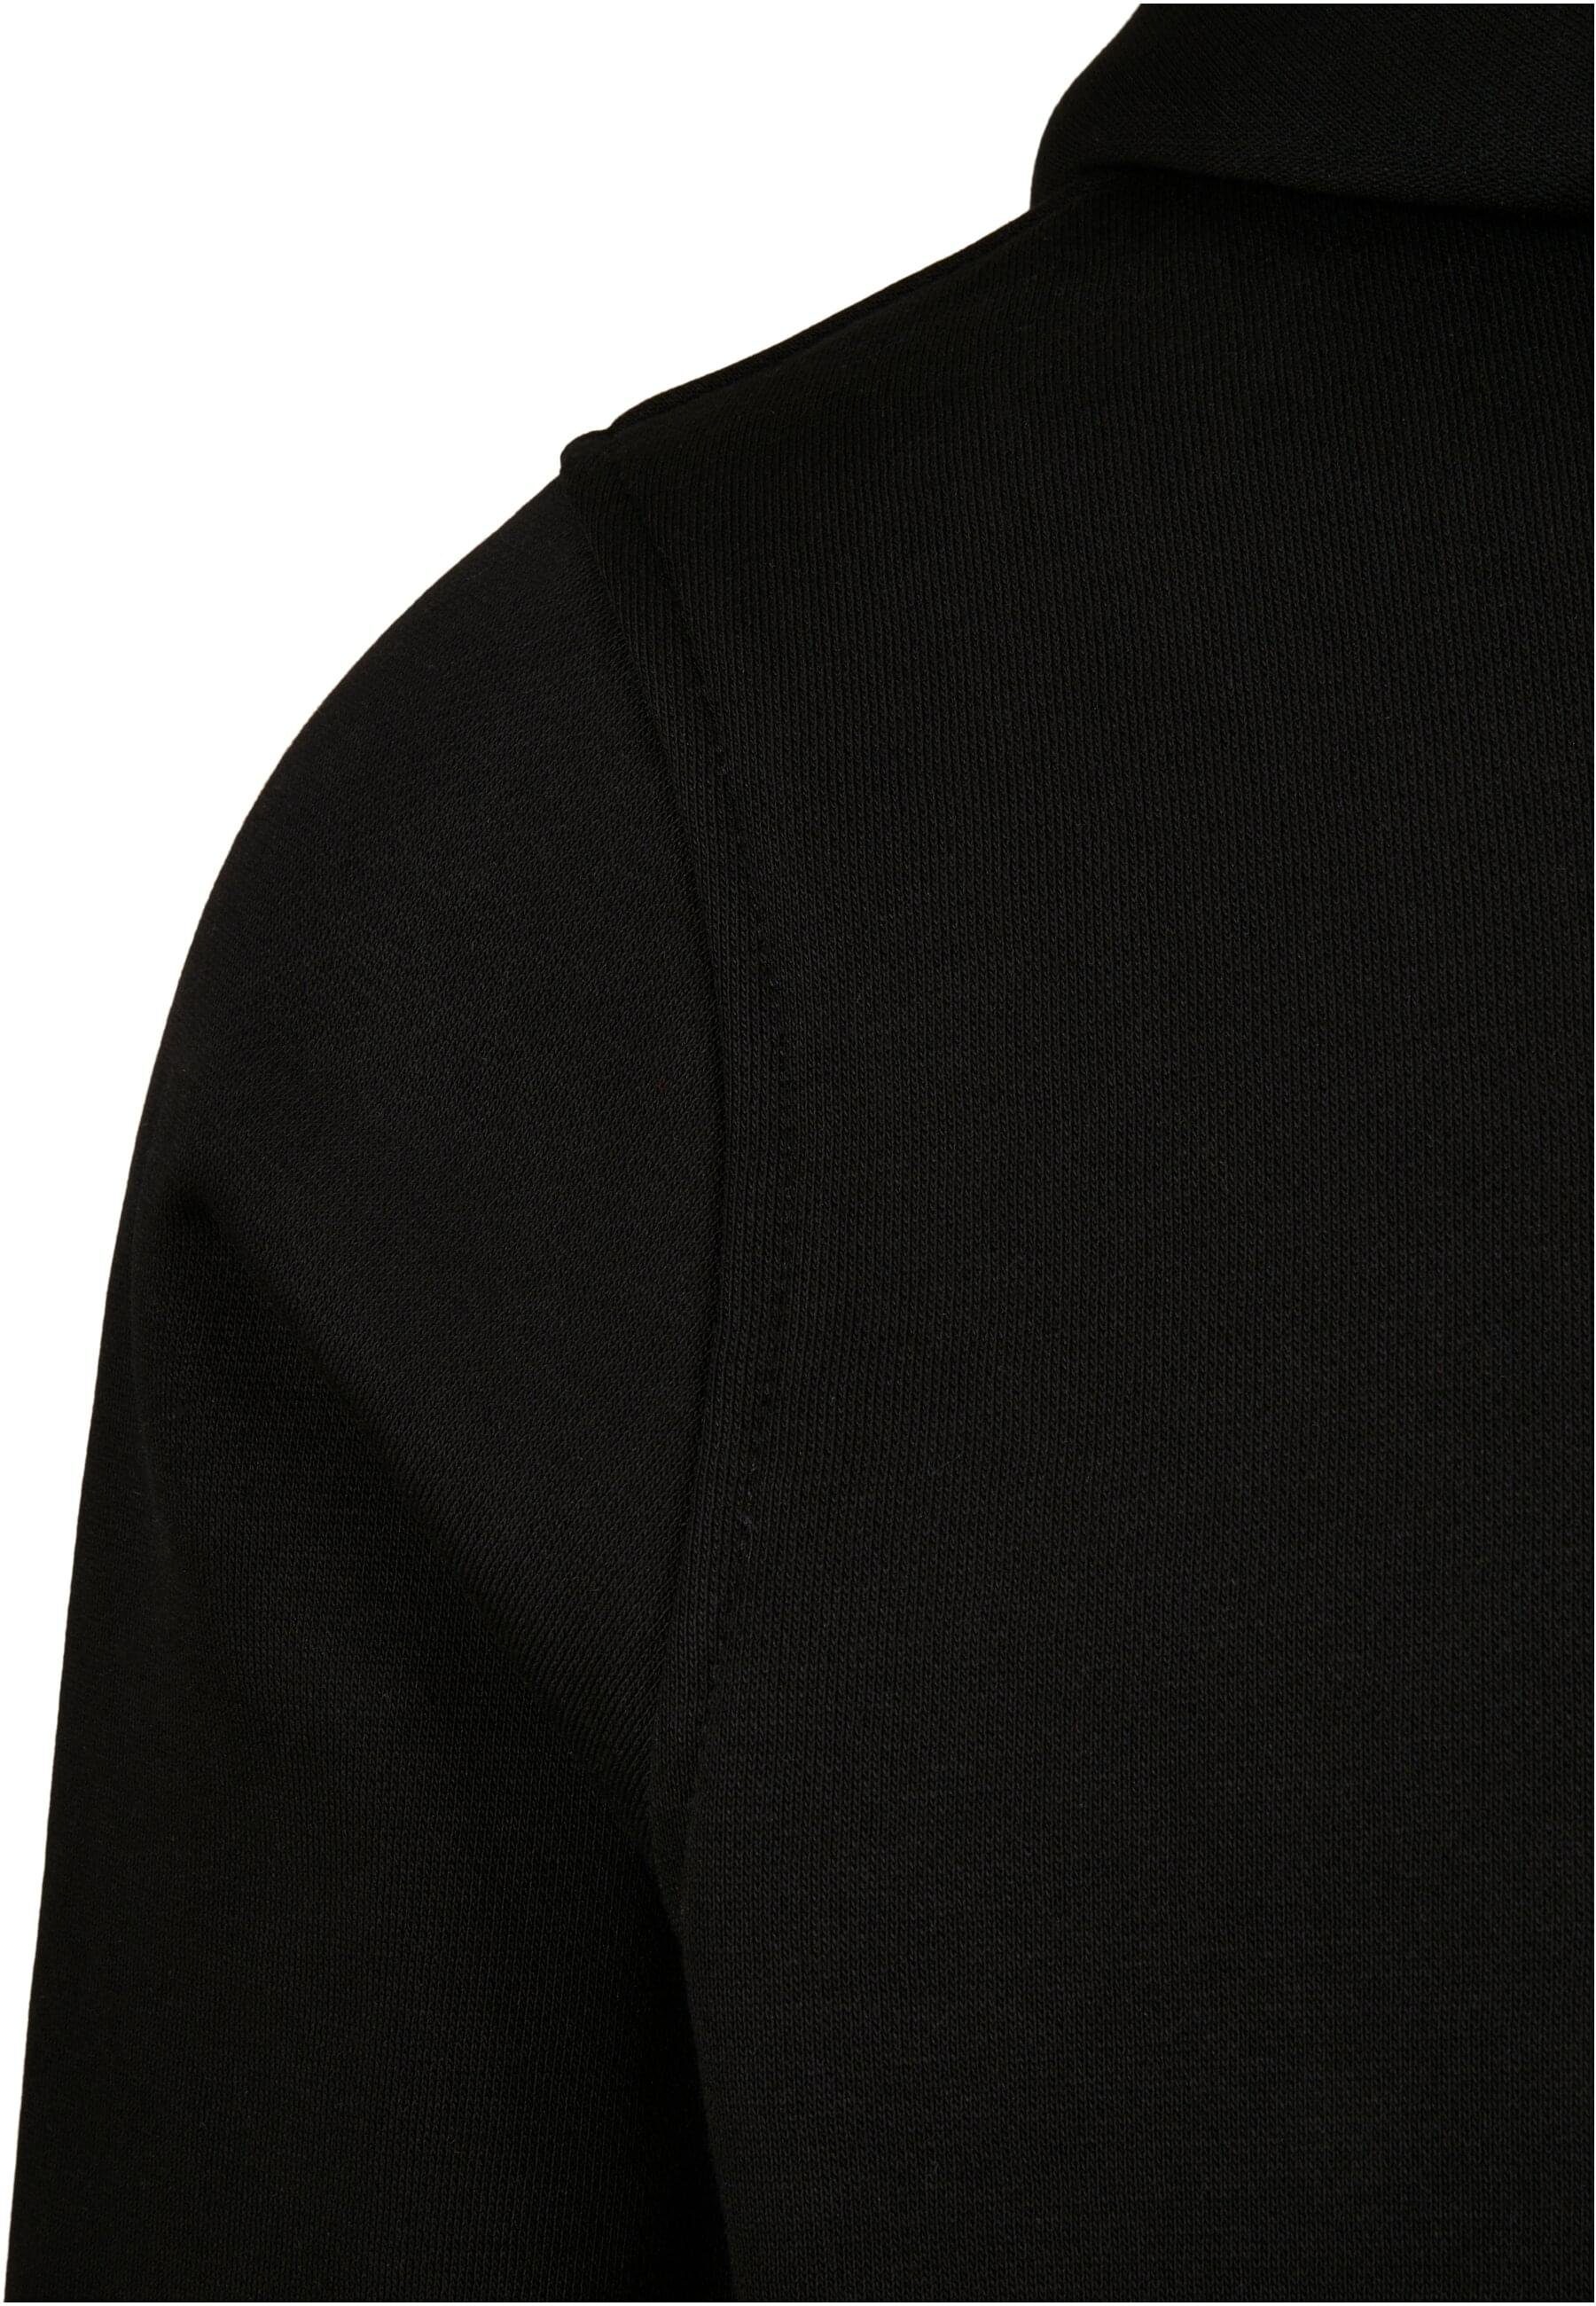 (1-tlg) Sweater black Starter Classic Logo Starter The Hoody Herren